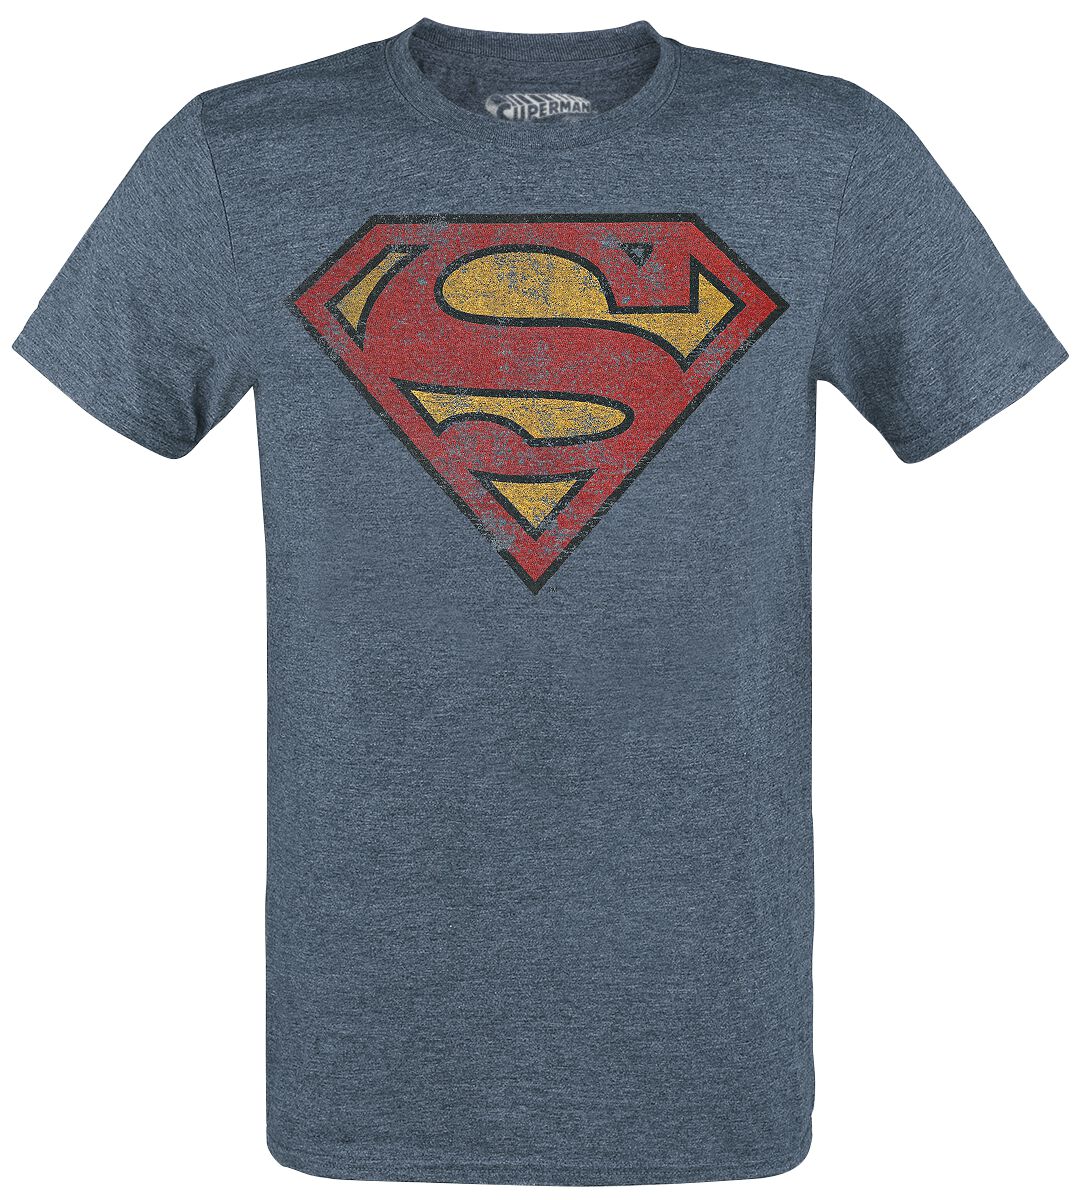 Superman - DC Comics T-Shirt - Logo - M bis XXL - für Männer - Größe M - blau meliert  - Lizenzierter Fanartikel